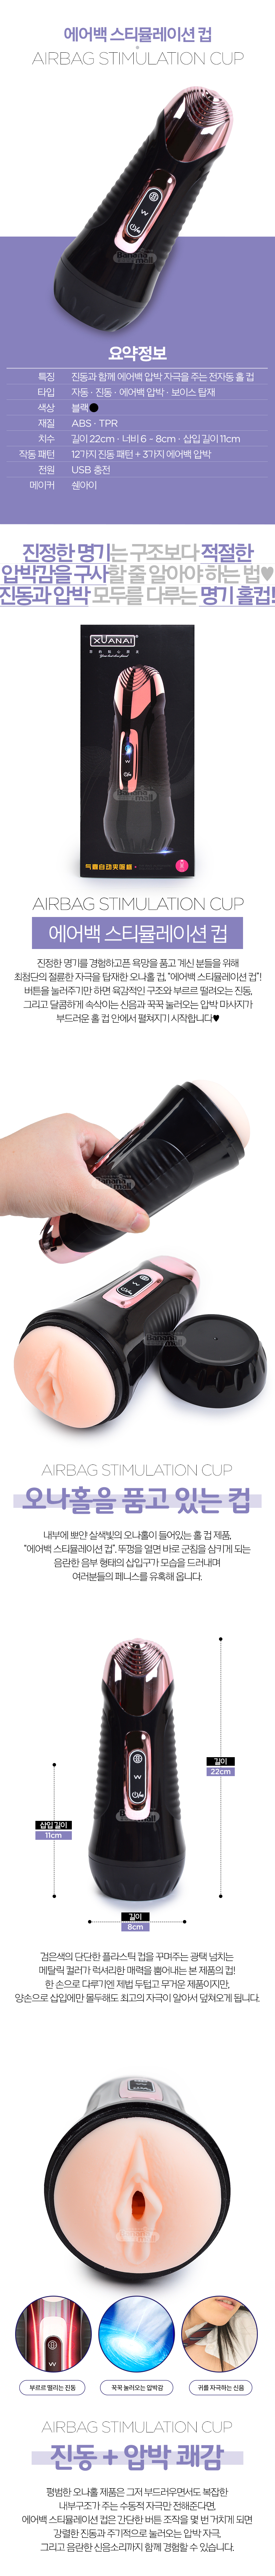 [12단 진동 + 3단 에어백 압박] 에어백 스티뮬레이션 컵(Airbag Stimulation Cup)